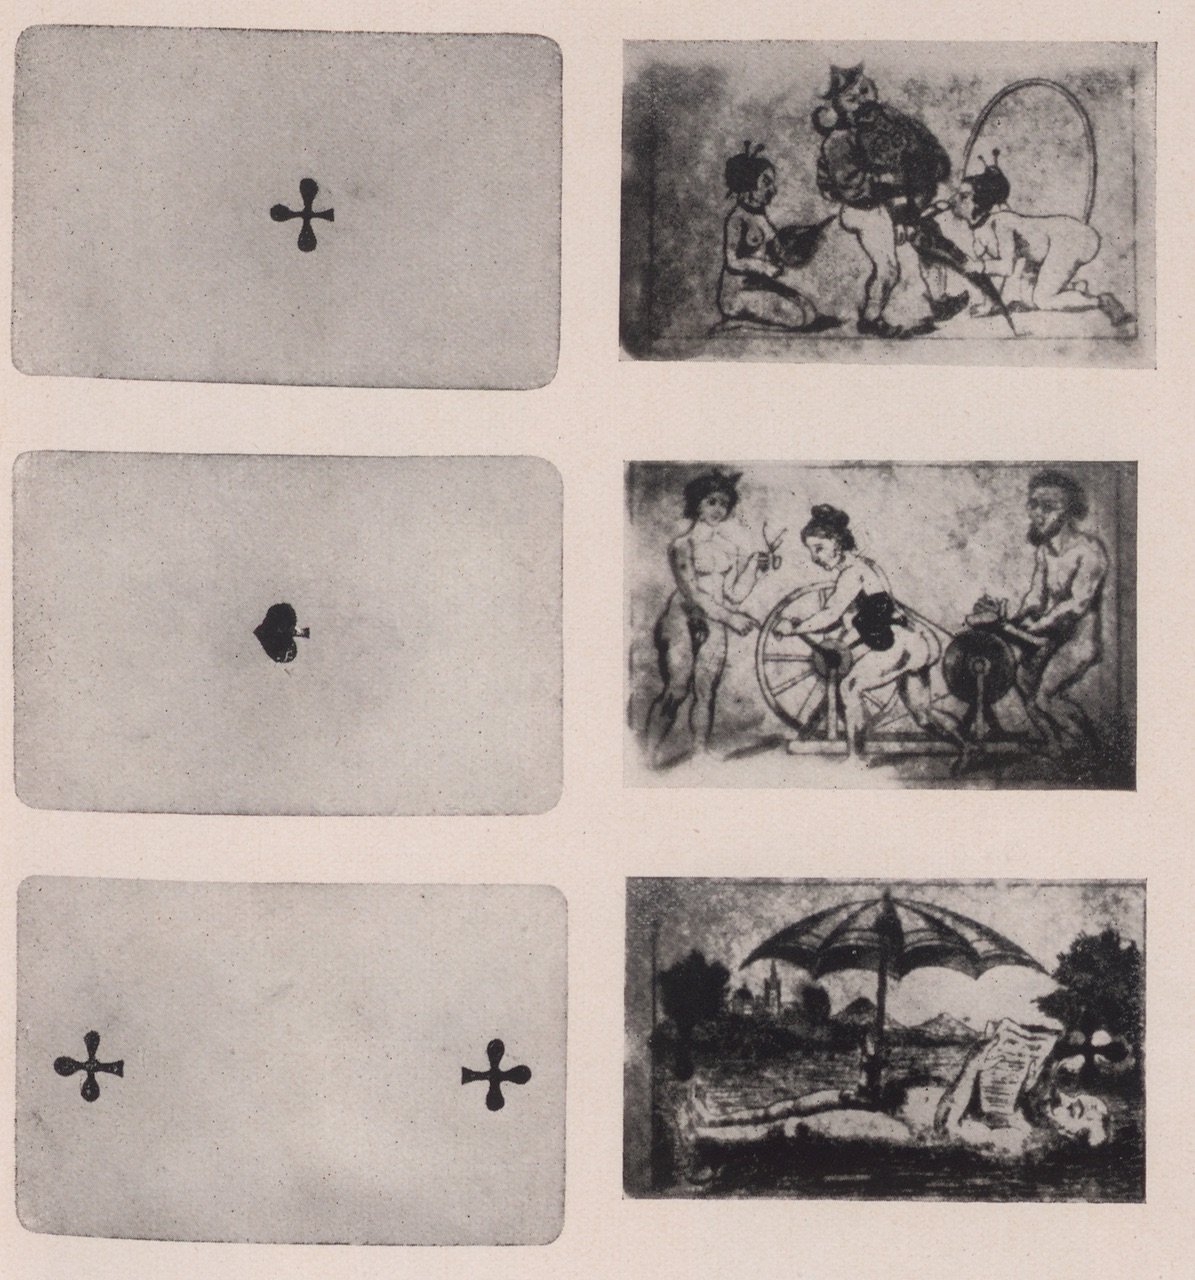 Abbildung von Spielkarten mit sexuellen Bildern (1) (Magnus-Hirschfeld-Gesellschaft Public Domain Mark)